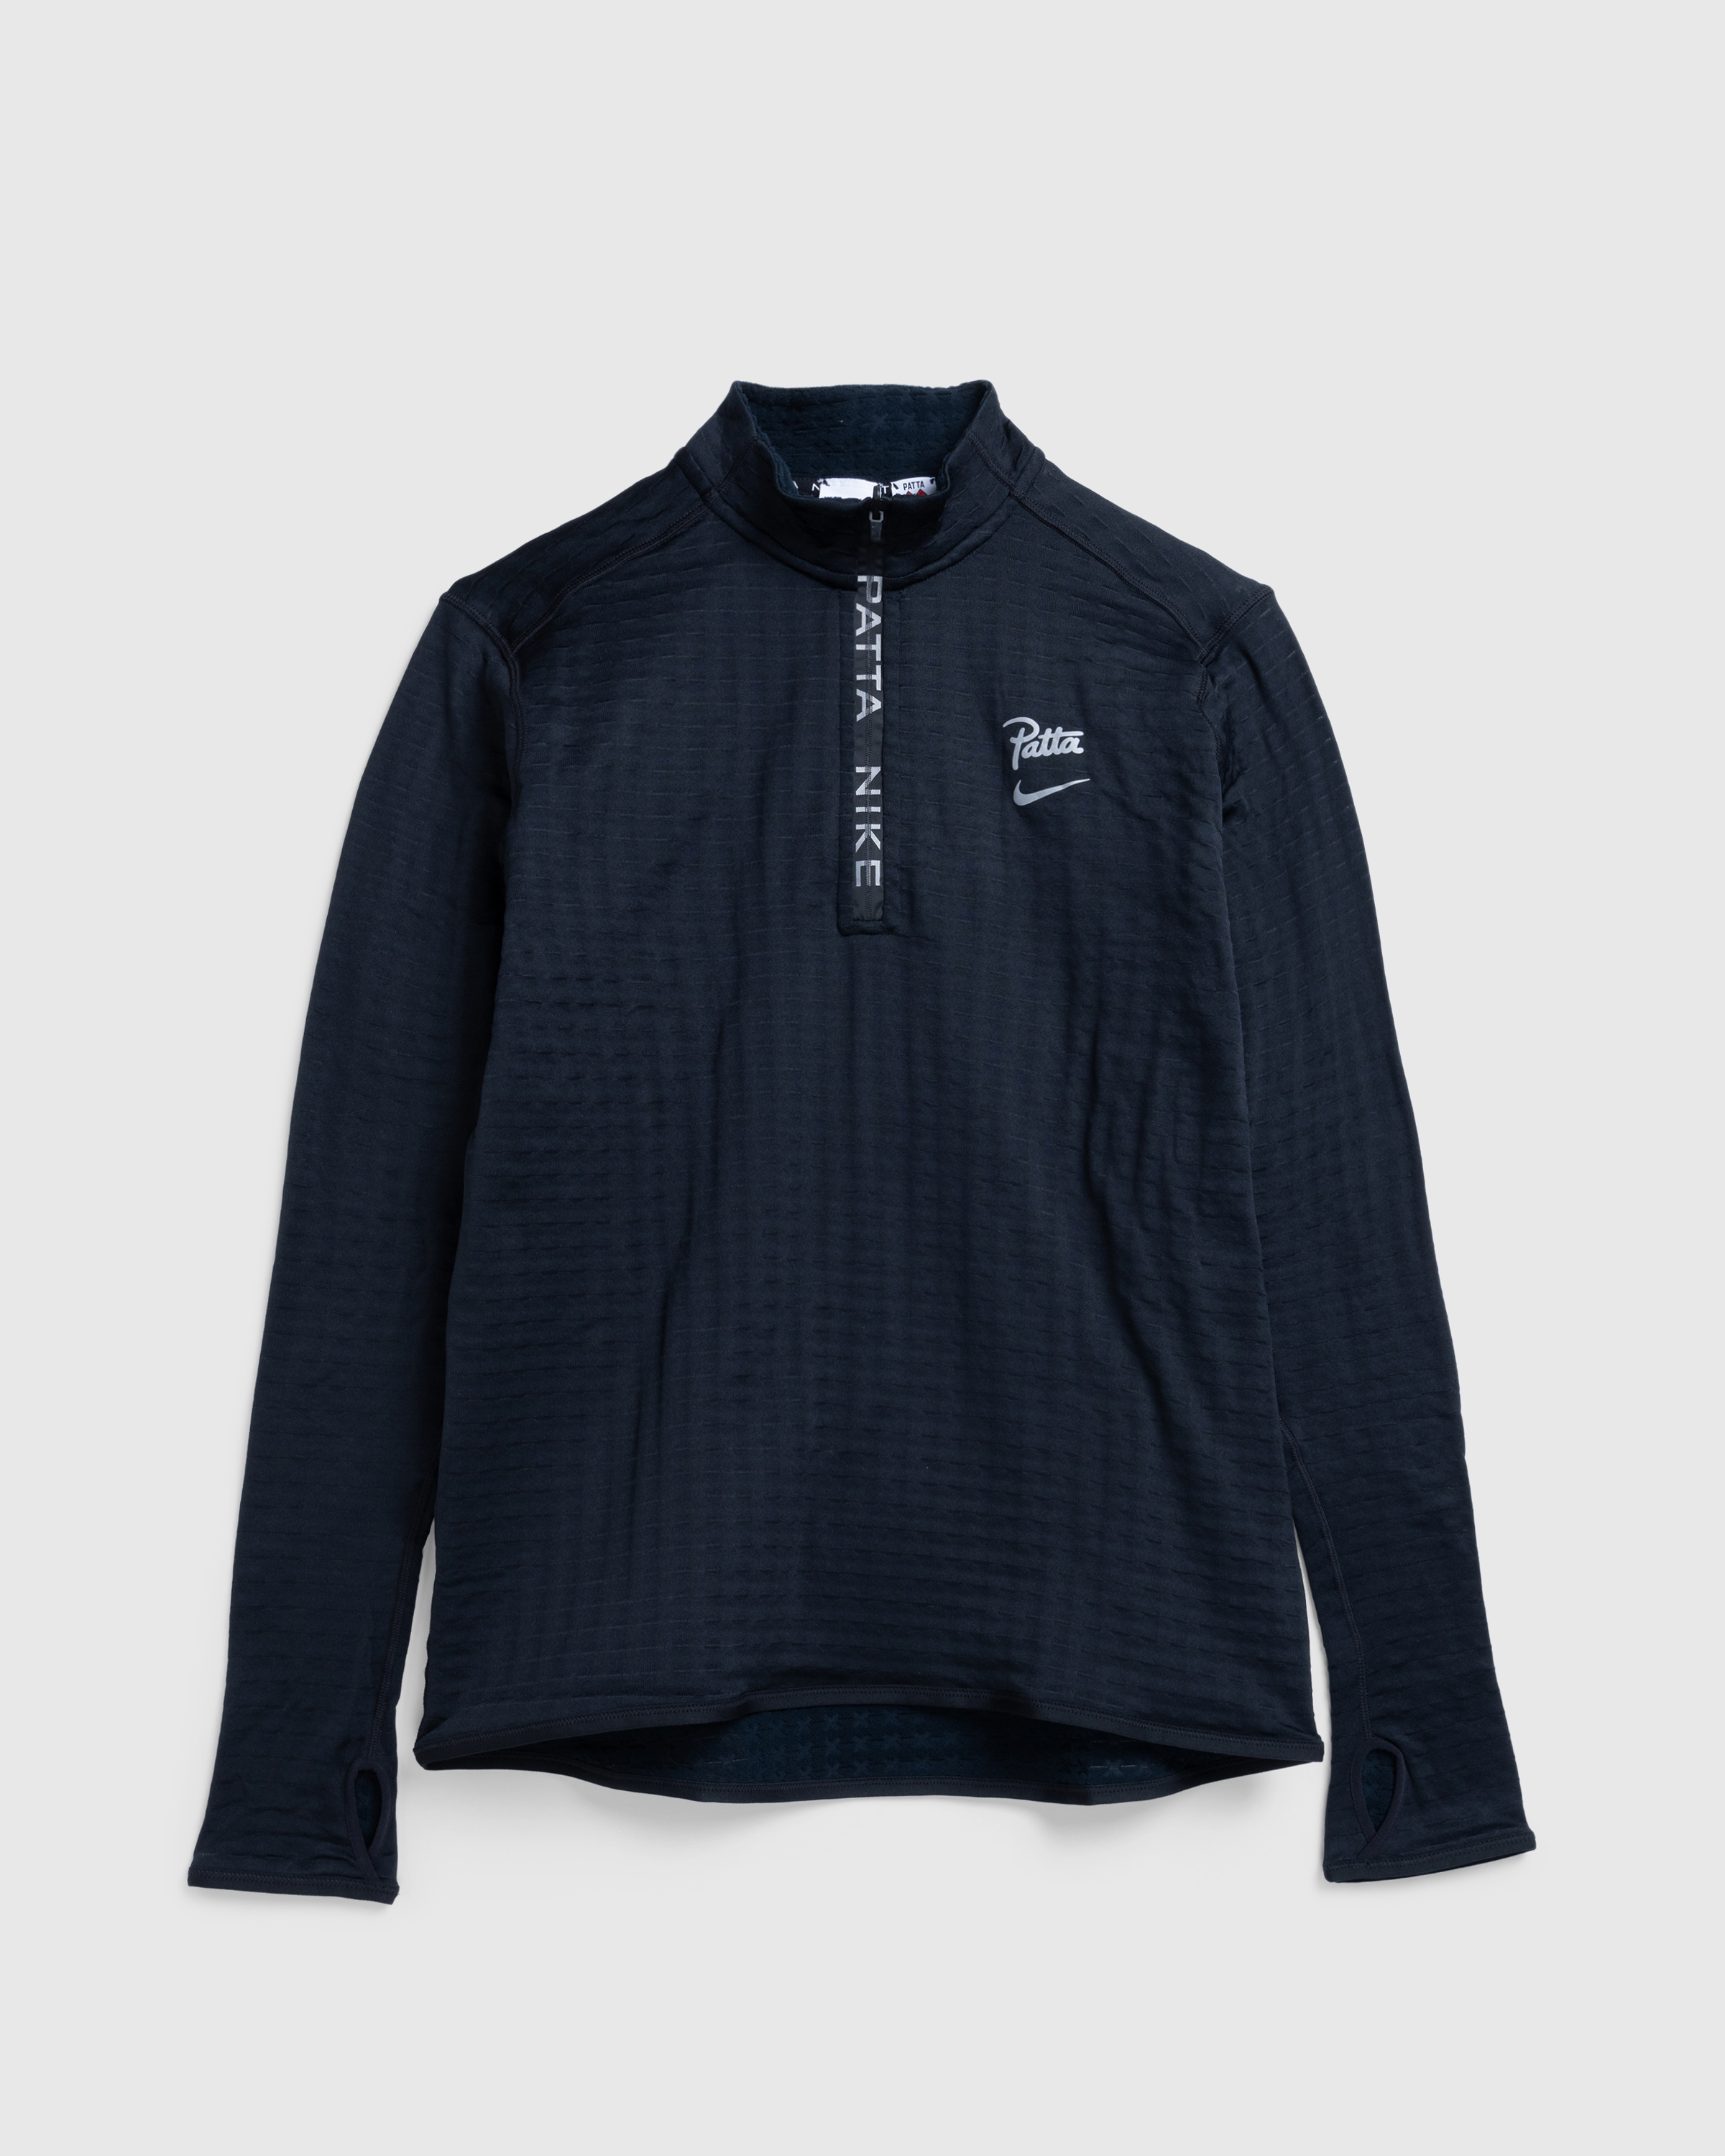 Nike x Patta – Half-Zip Long-Sleeve Top Black - Zip-Ups - Black - Image 1